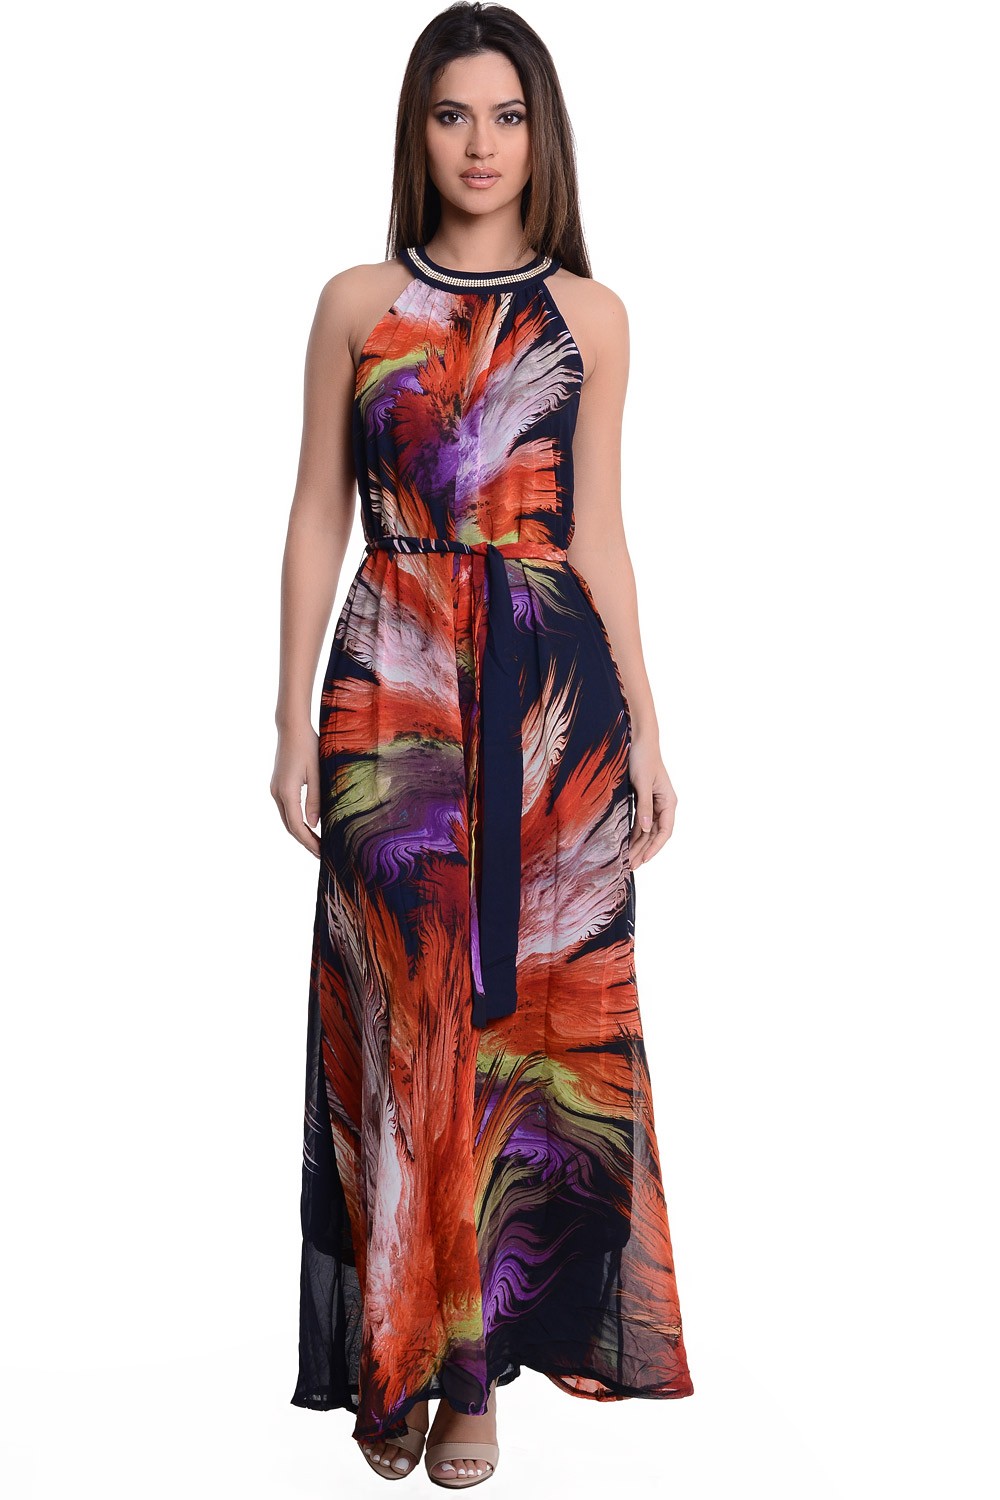 Christina Embellished Neck Print Maxi Dress | iCLOTHING